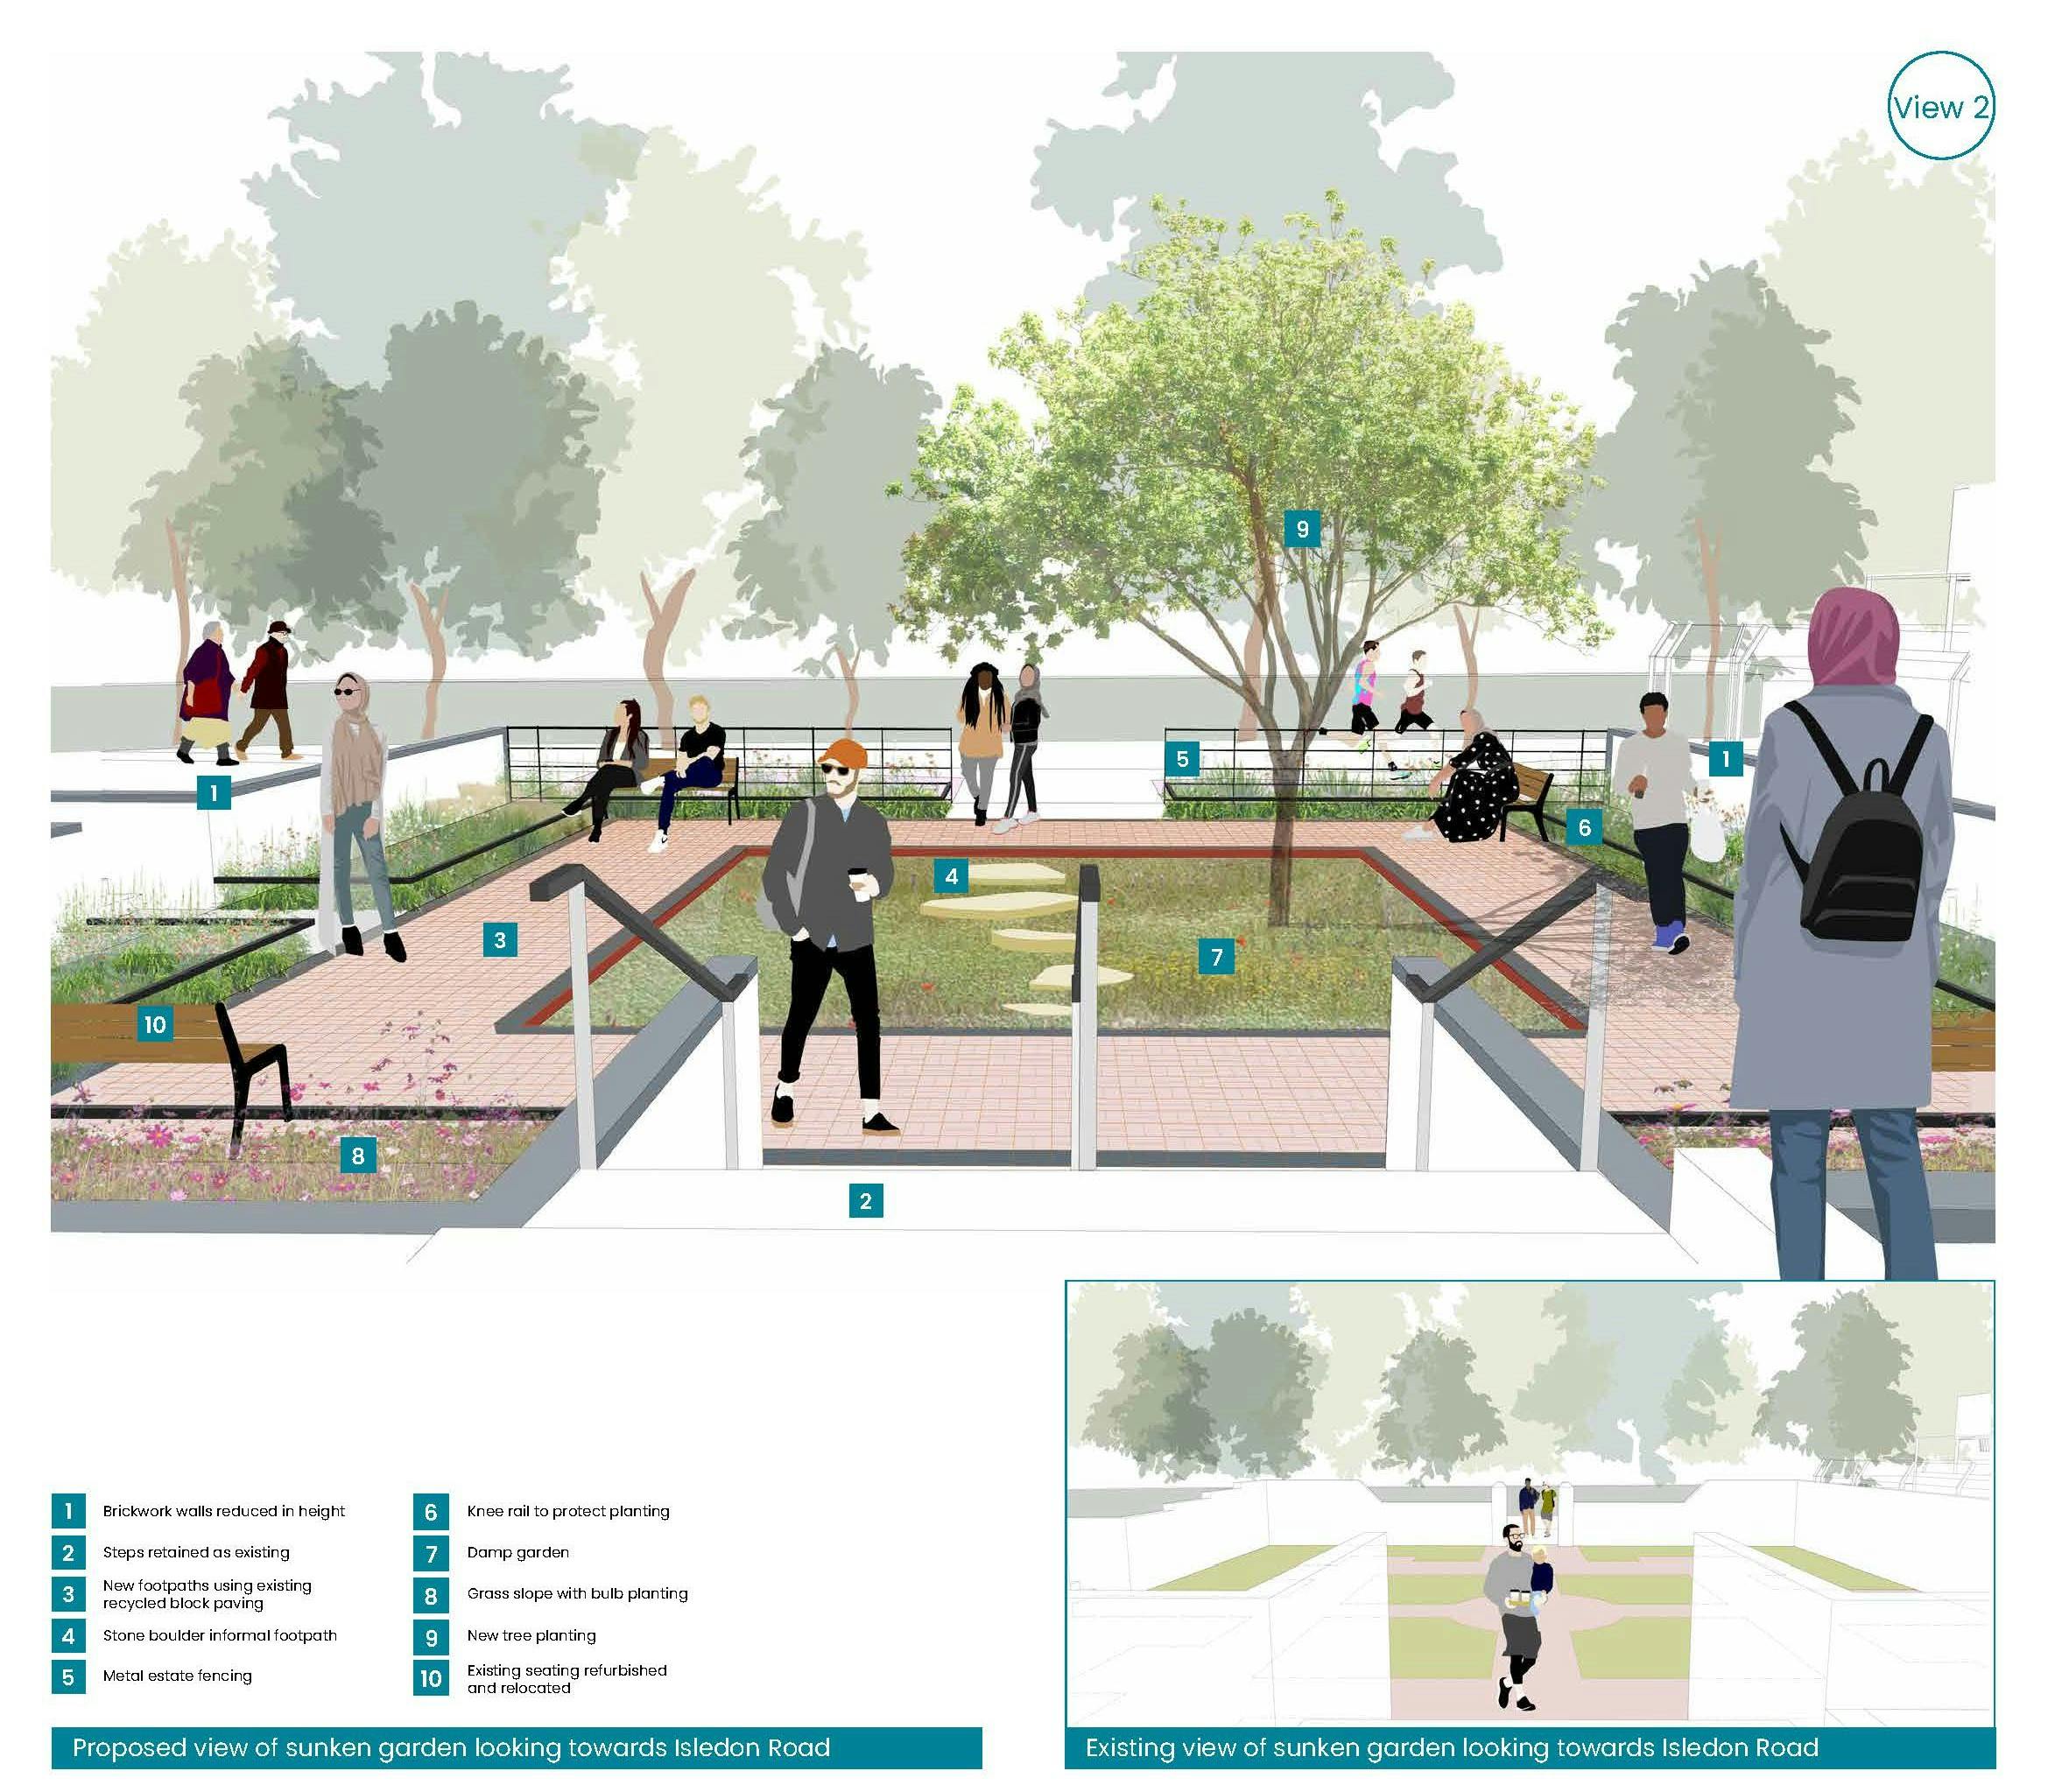 Sunken Garden: Proposed design 'View 2' - towards Isledon Road